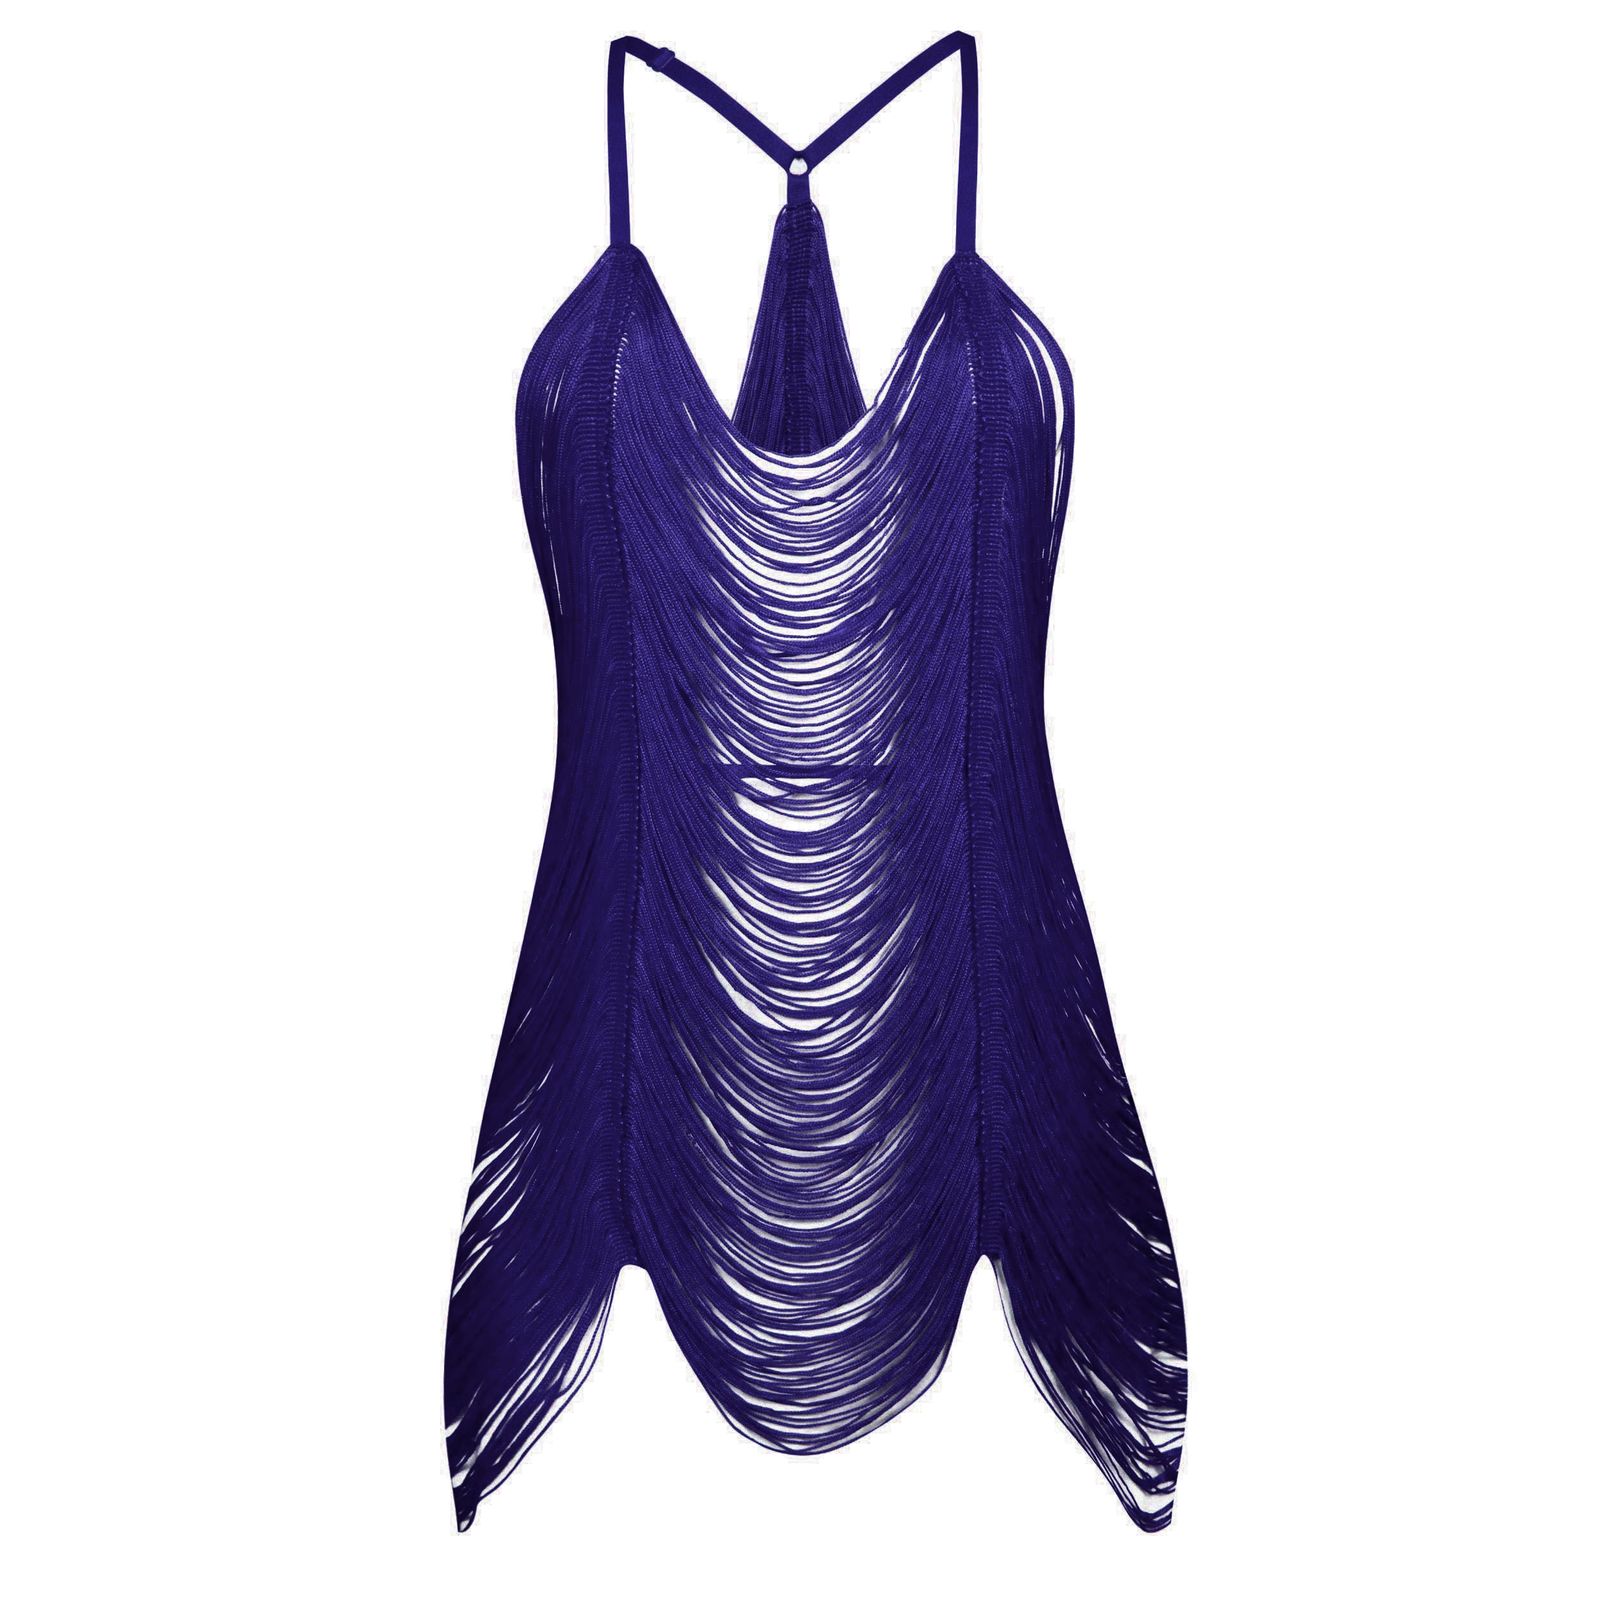 لباس خواب زنانه ماییلدا مدل ریش ریش کد 4438 رنگ سرمه ای -  - 2